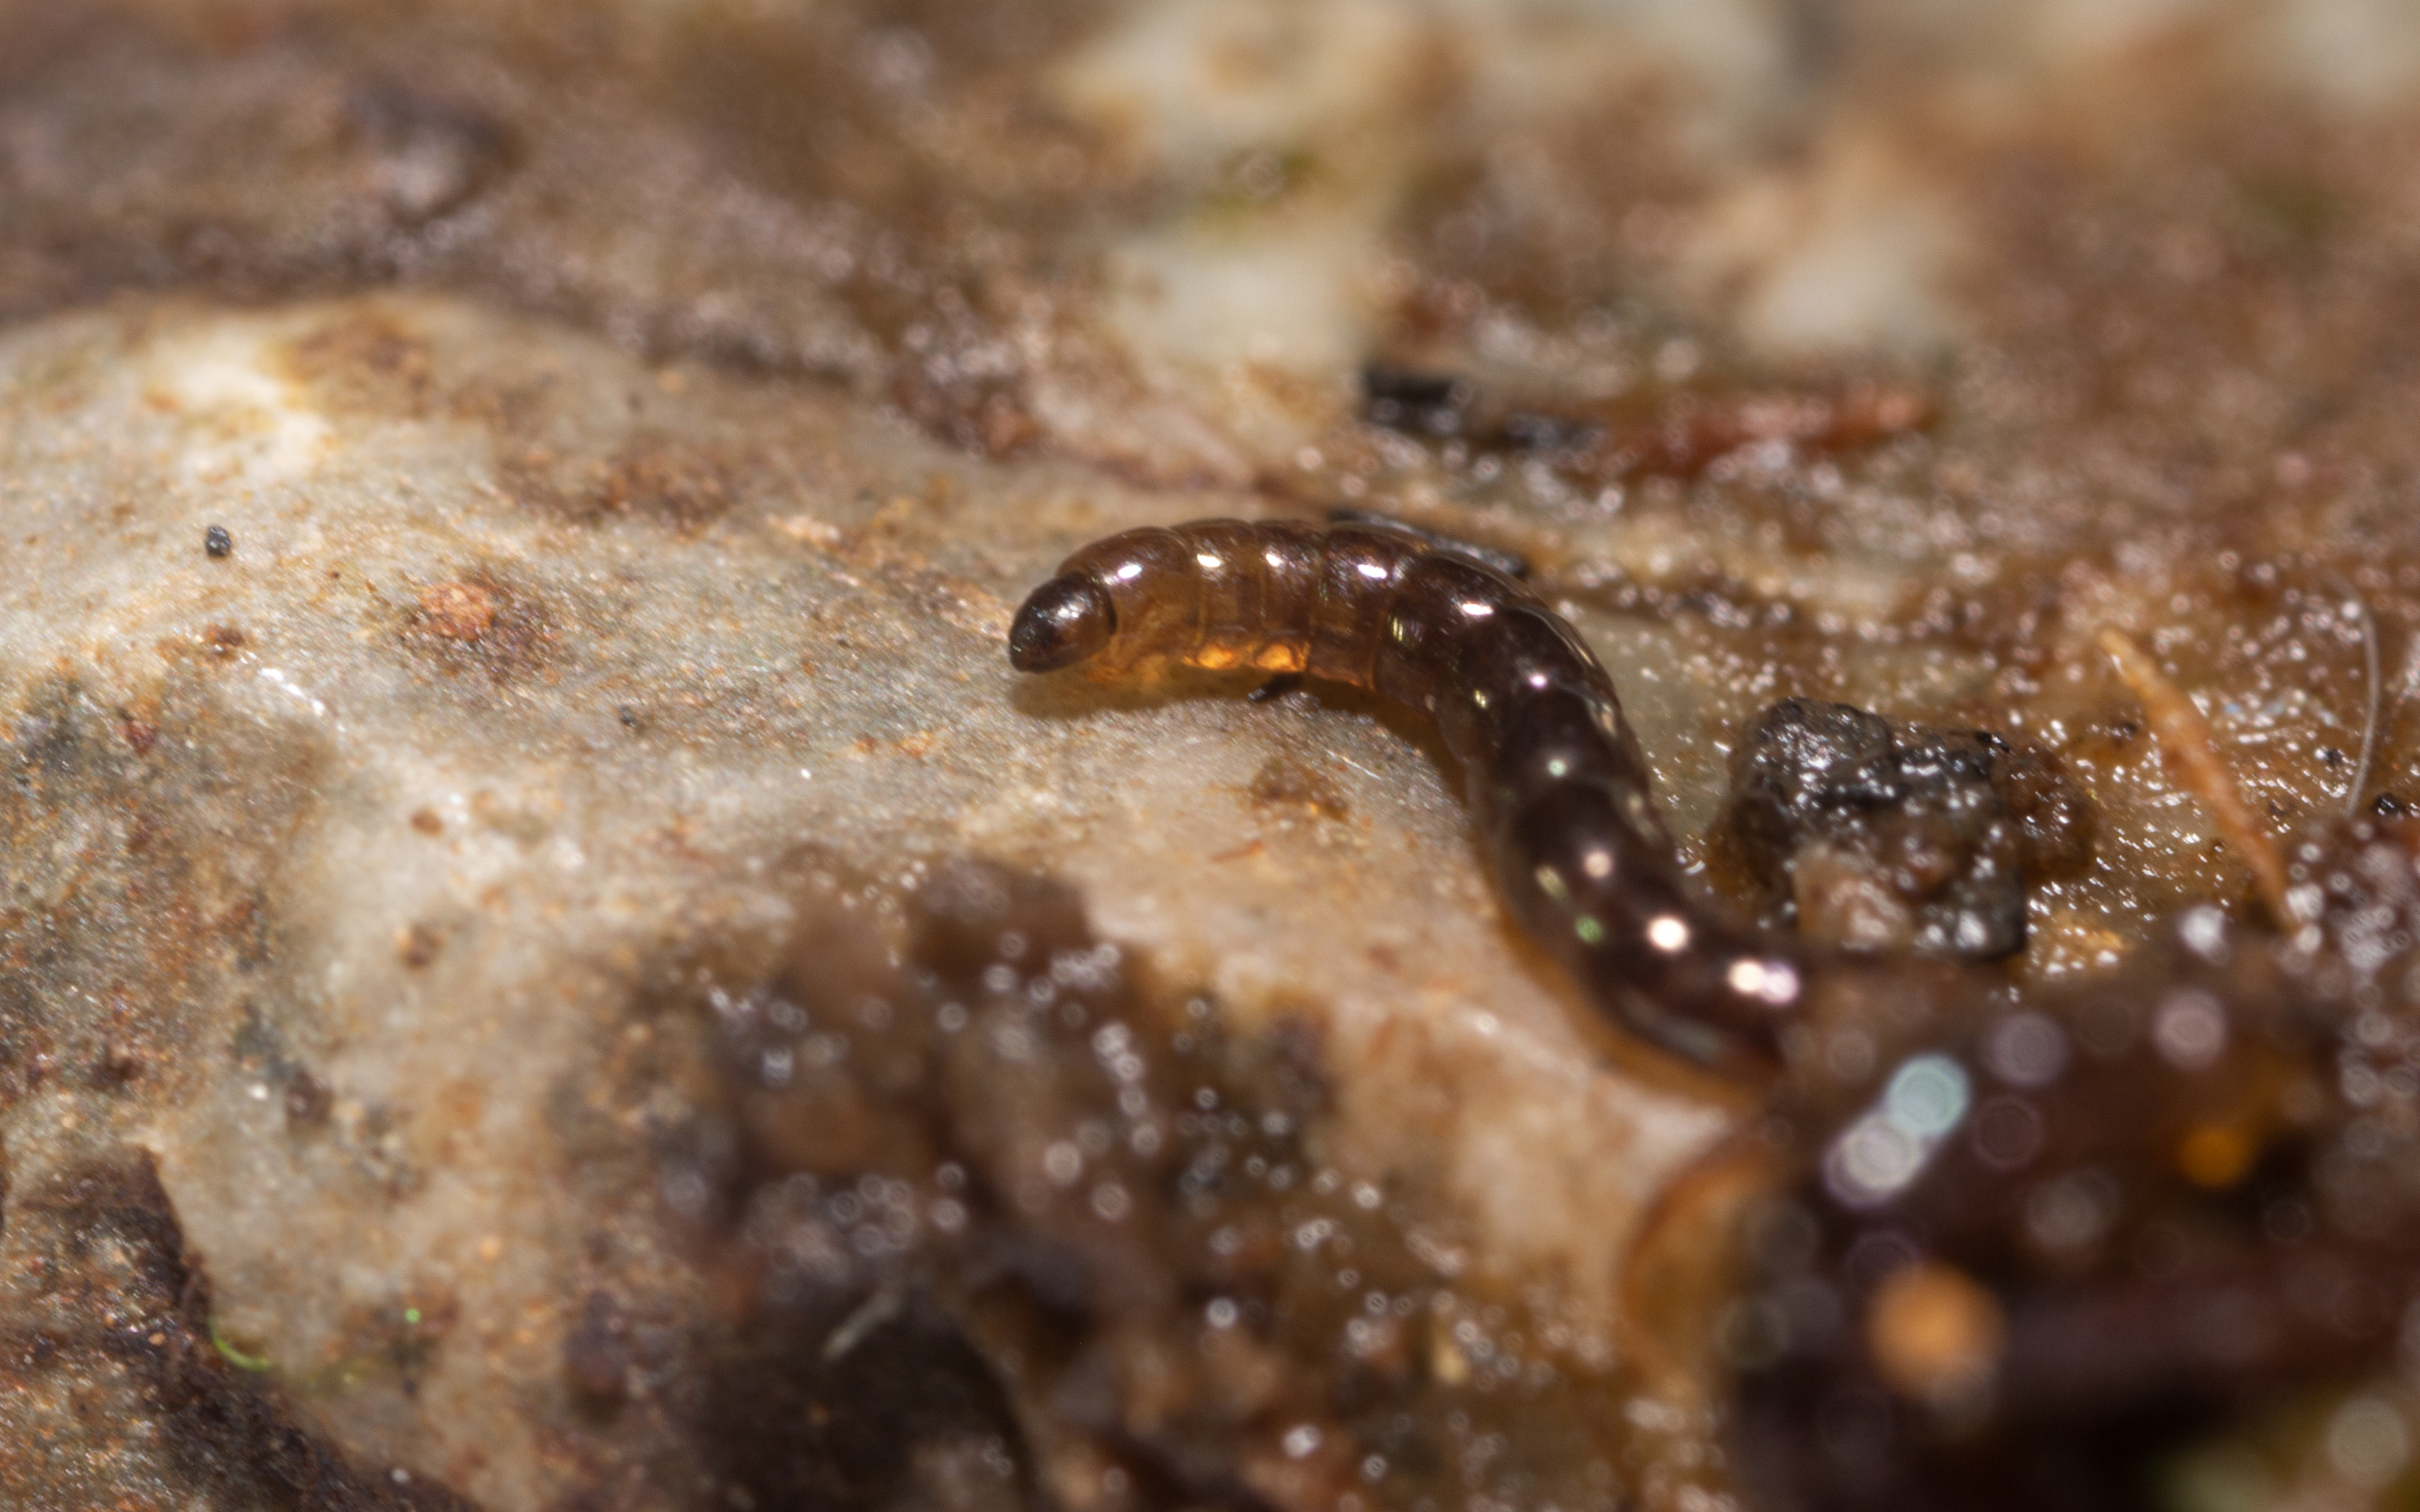 A worm-like larva crawls on a rock.